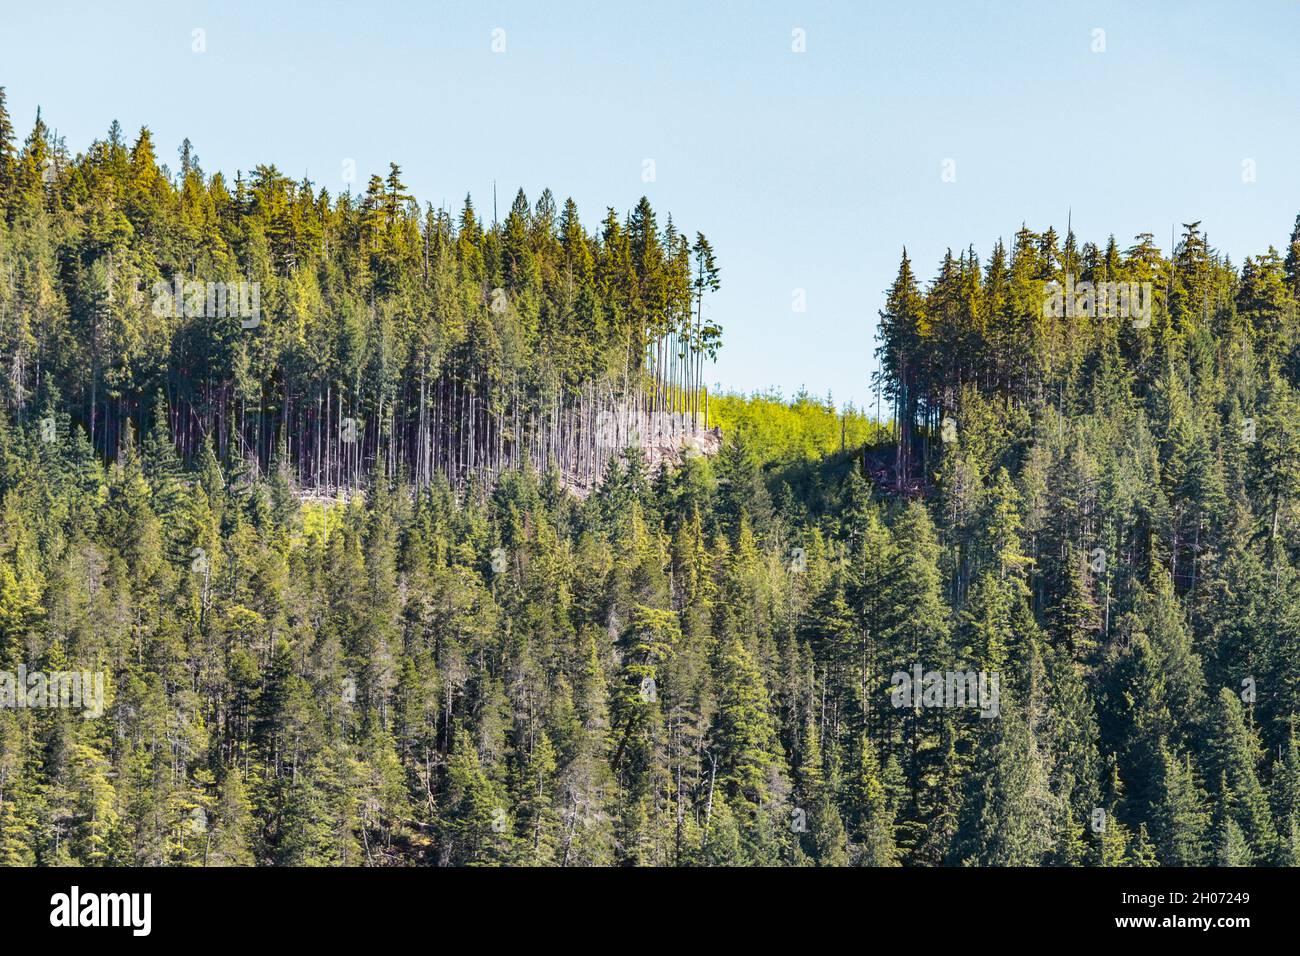 La barra de la tala de árboles reciente se encuentra junto a un corte claro entre dos secciones aún boscosas en la cima de una colina en la costa de Columbia Británica. Foto de stock